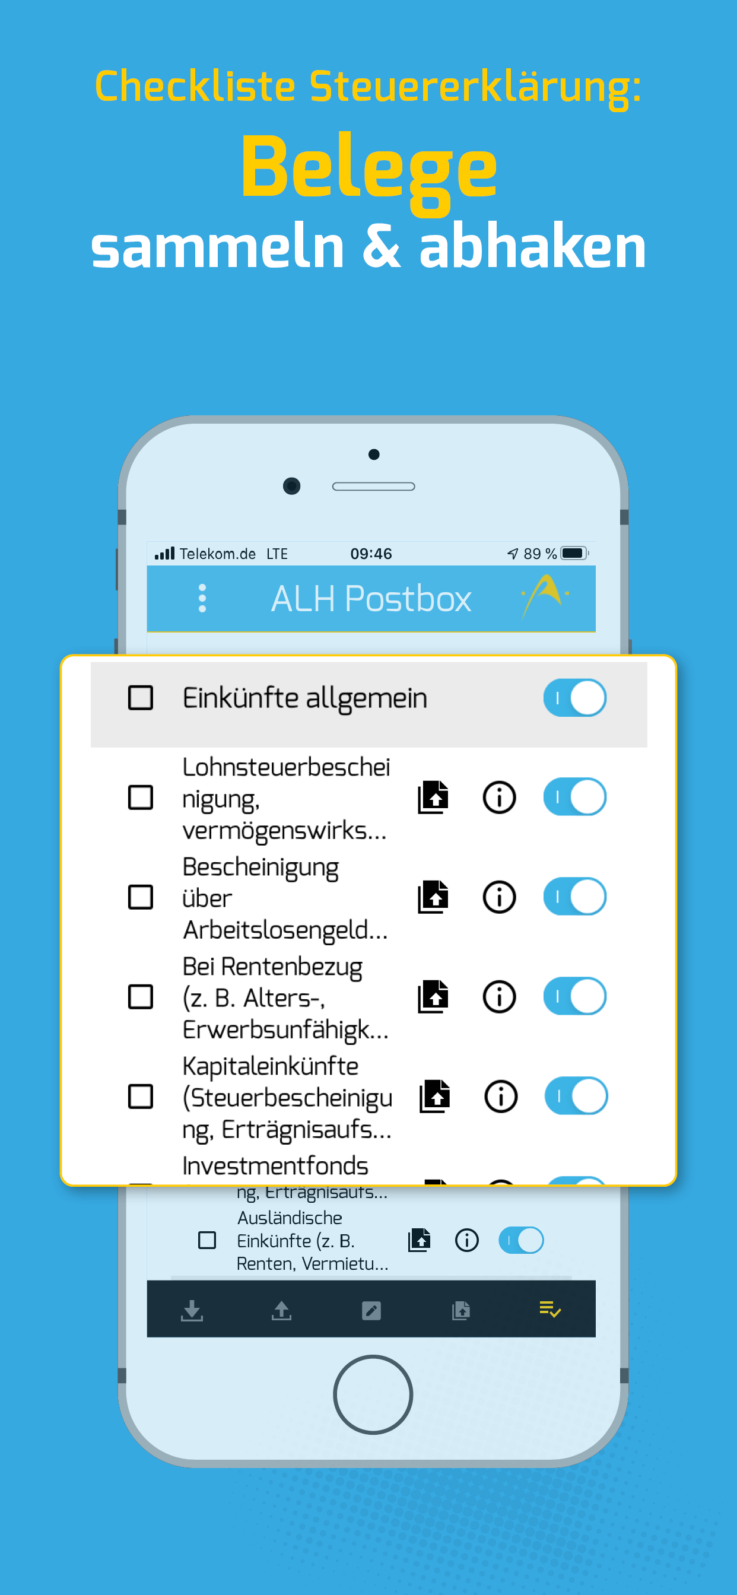 ALH Postbox App Checkliste Steuererklärung Belege sammeln & abhaken